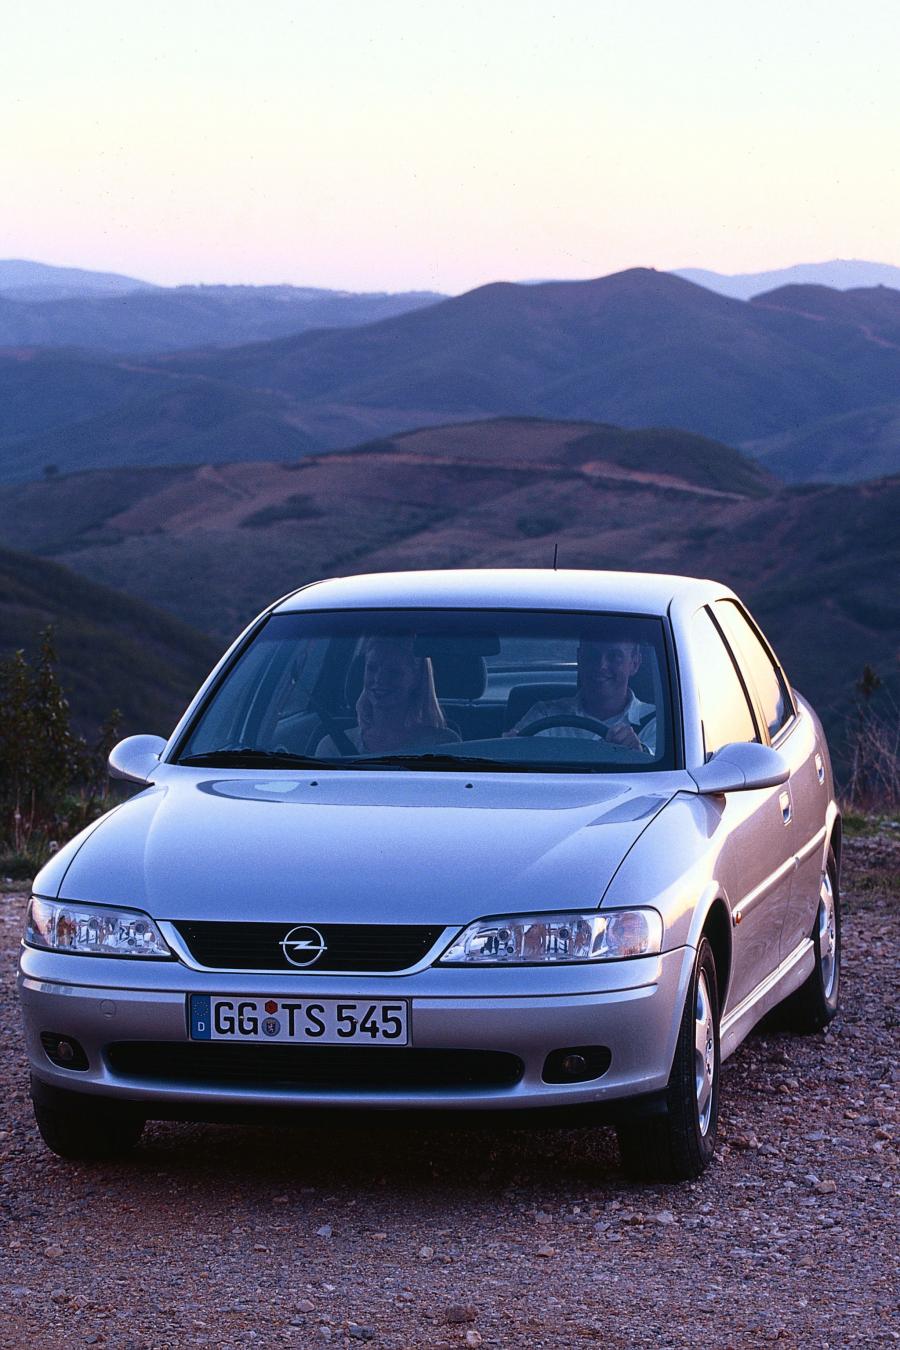 Автомобиль вектра б. Opel Vectra 1999. Opel Vectra 1999 седан. Recaro Opel. Opel Vectra b 1999.